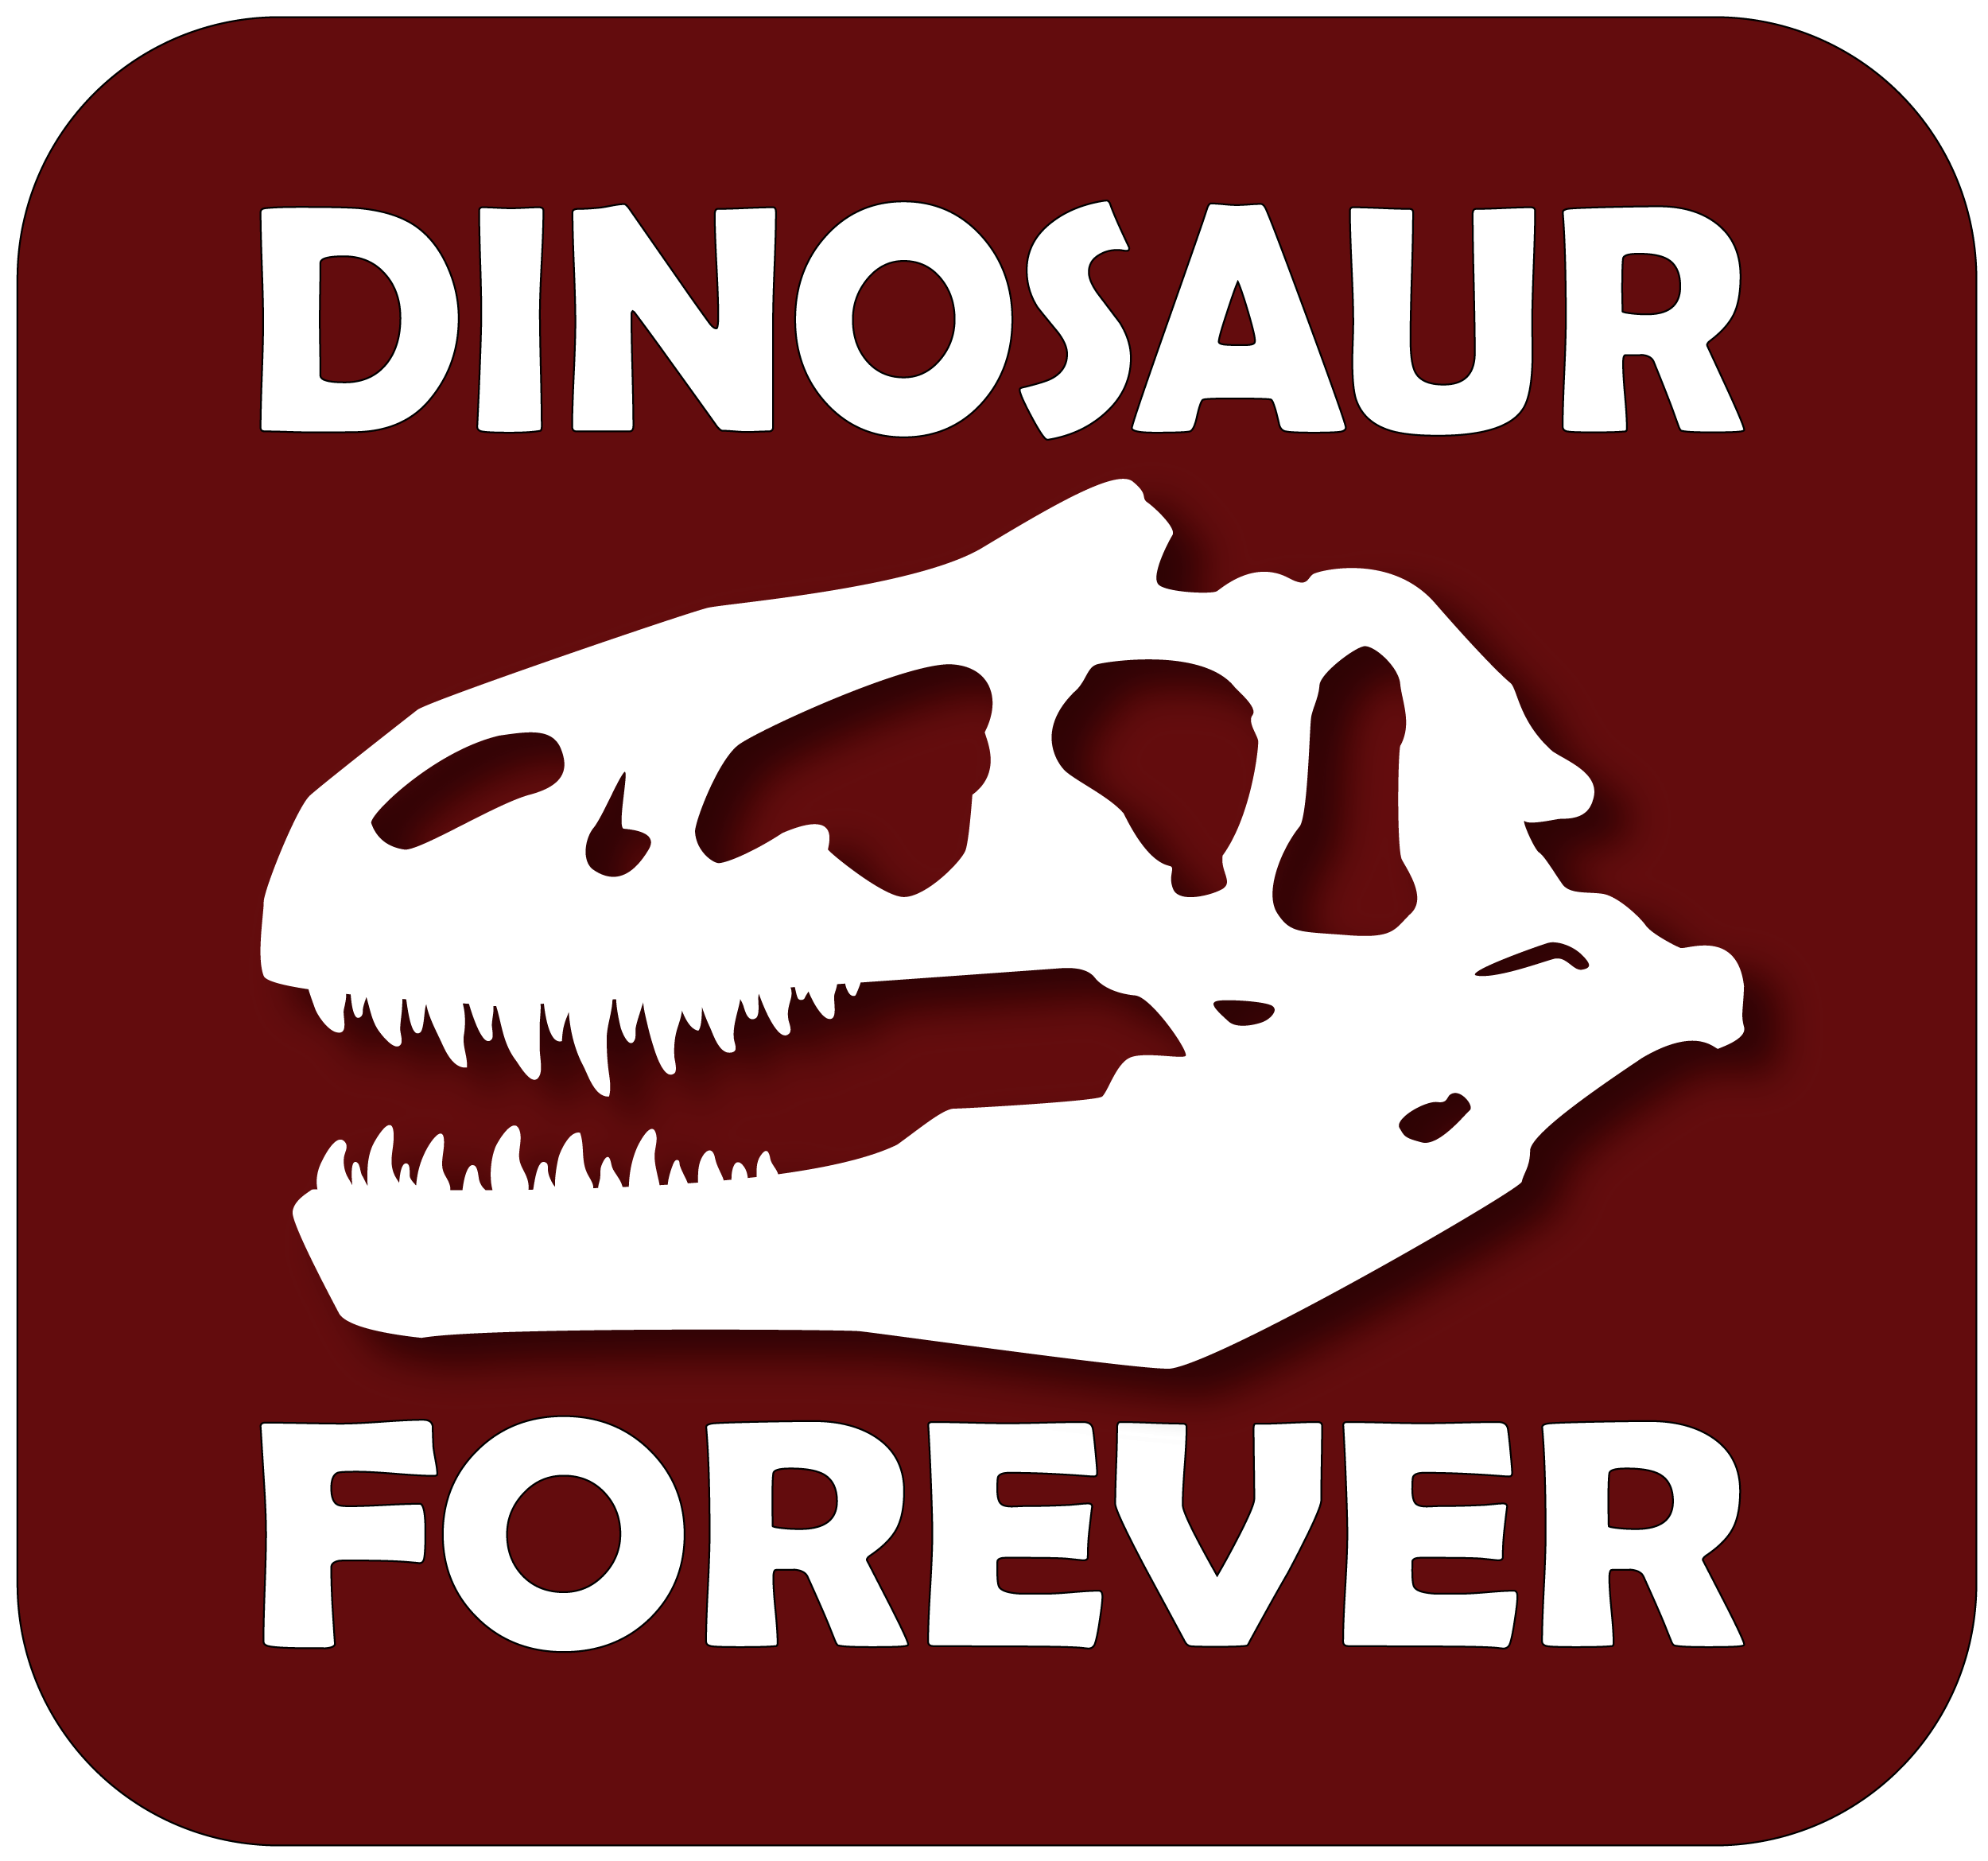 Logo for DinosaurForever, graphic of dinosaur skull